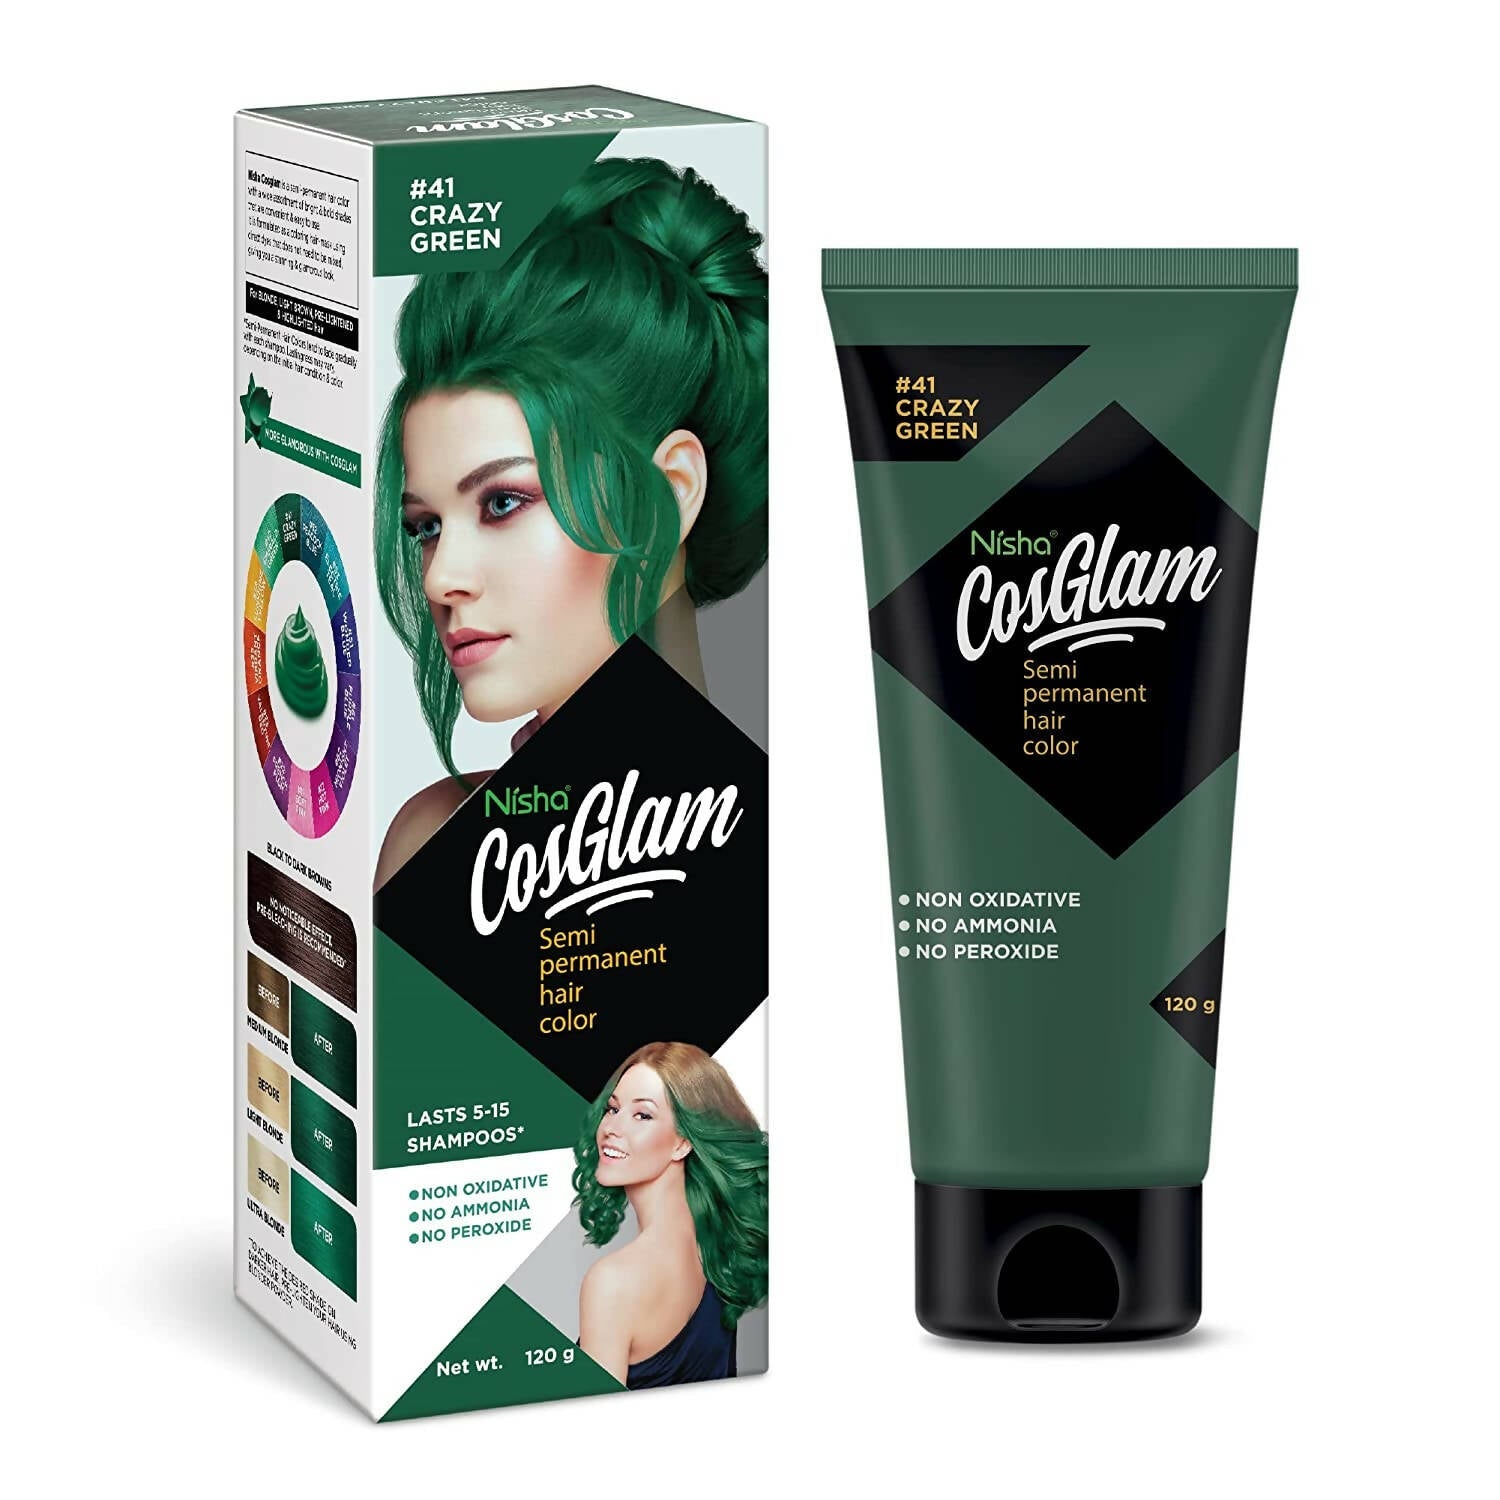 Nisha Cosglam Semi Permanent Hair Color 41 Crazy Green - BUDNE